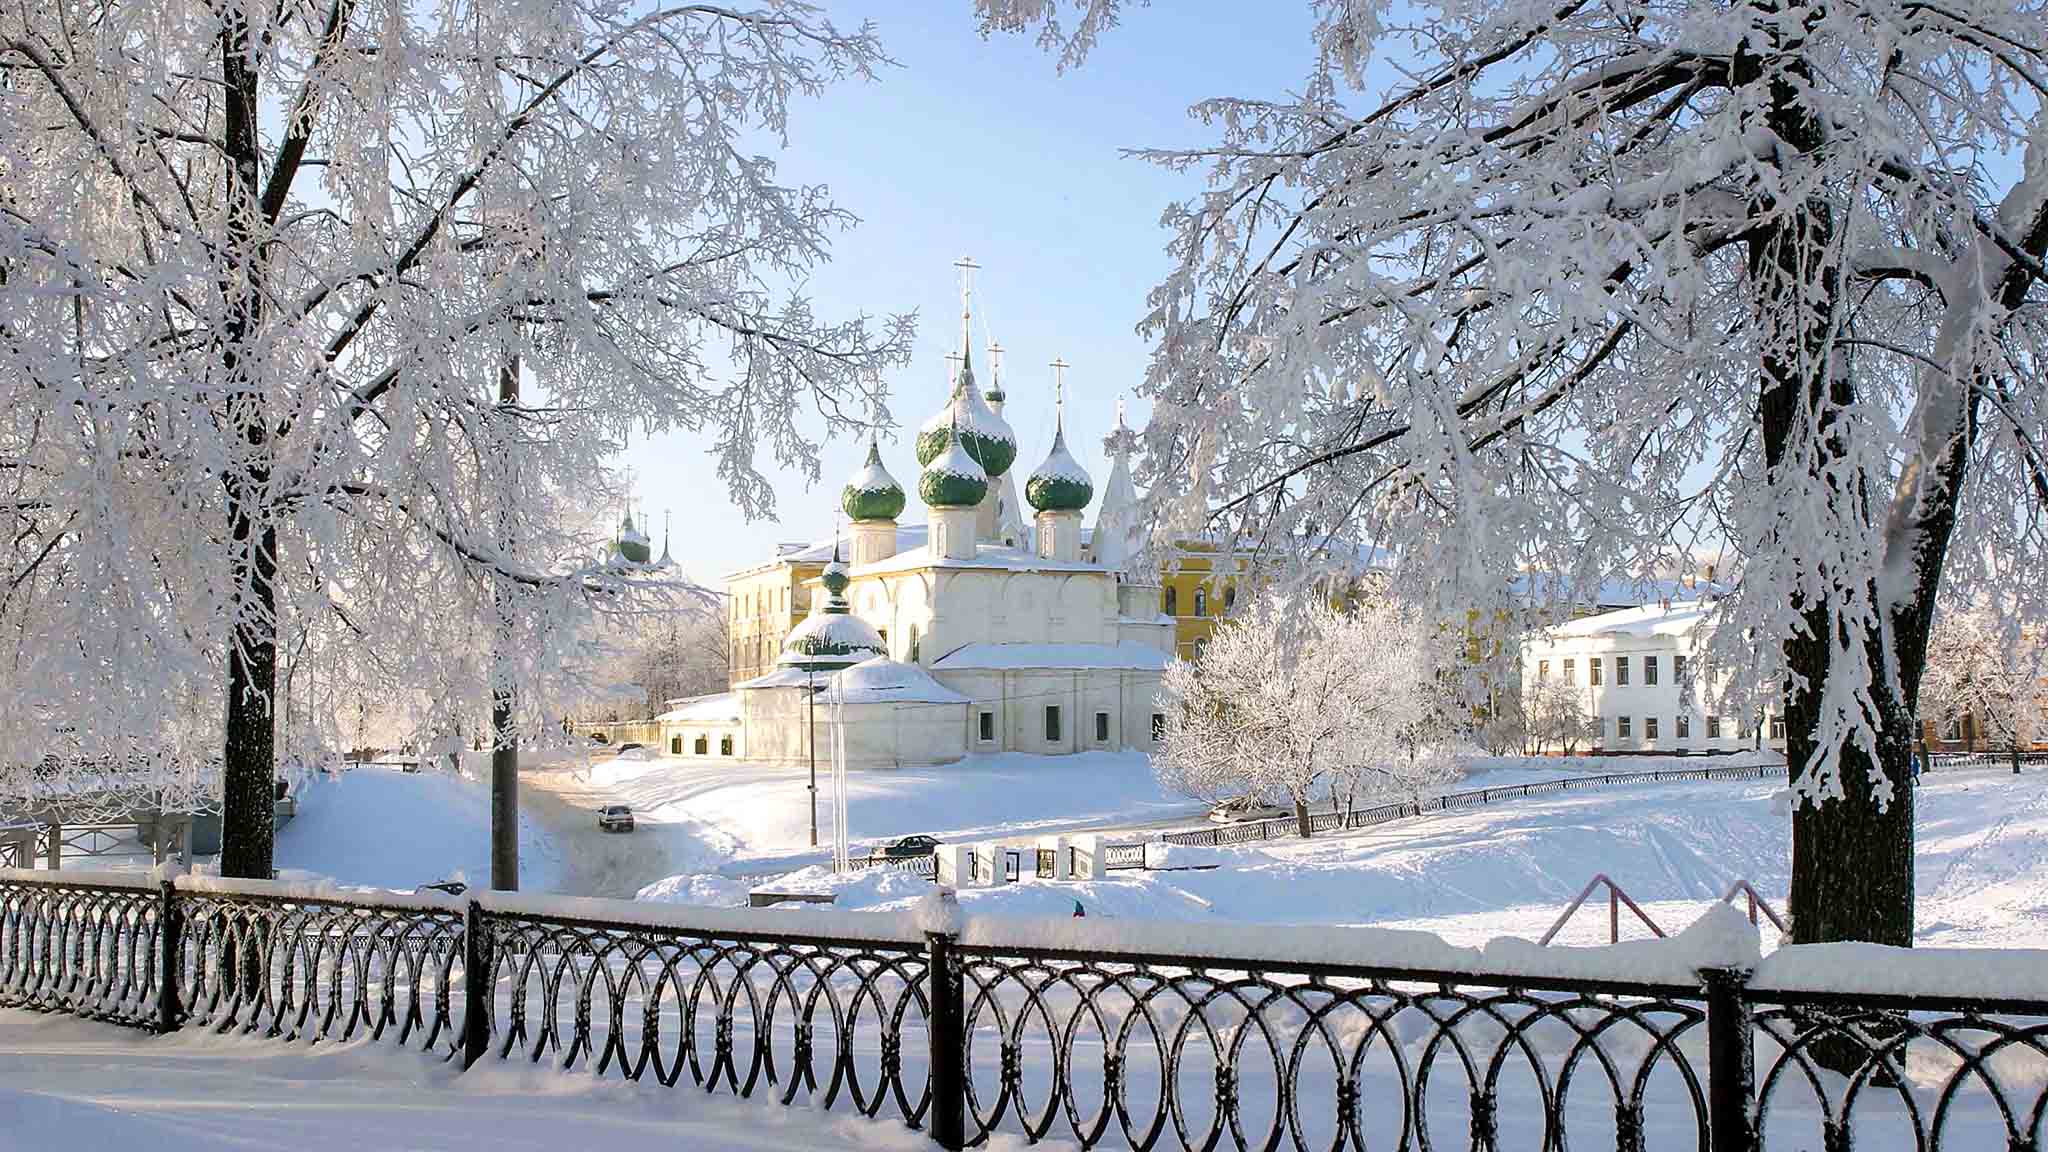 Ярославль вошел в пятерку новогоднего туристического рейтинга